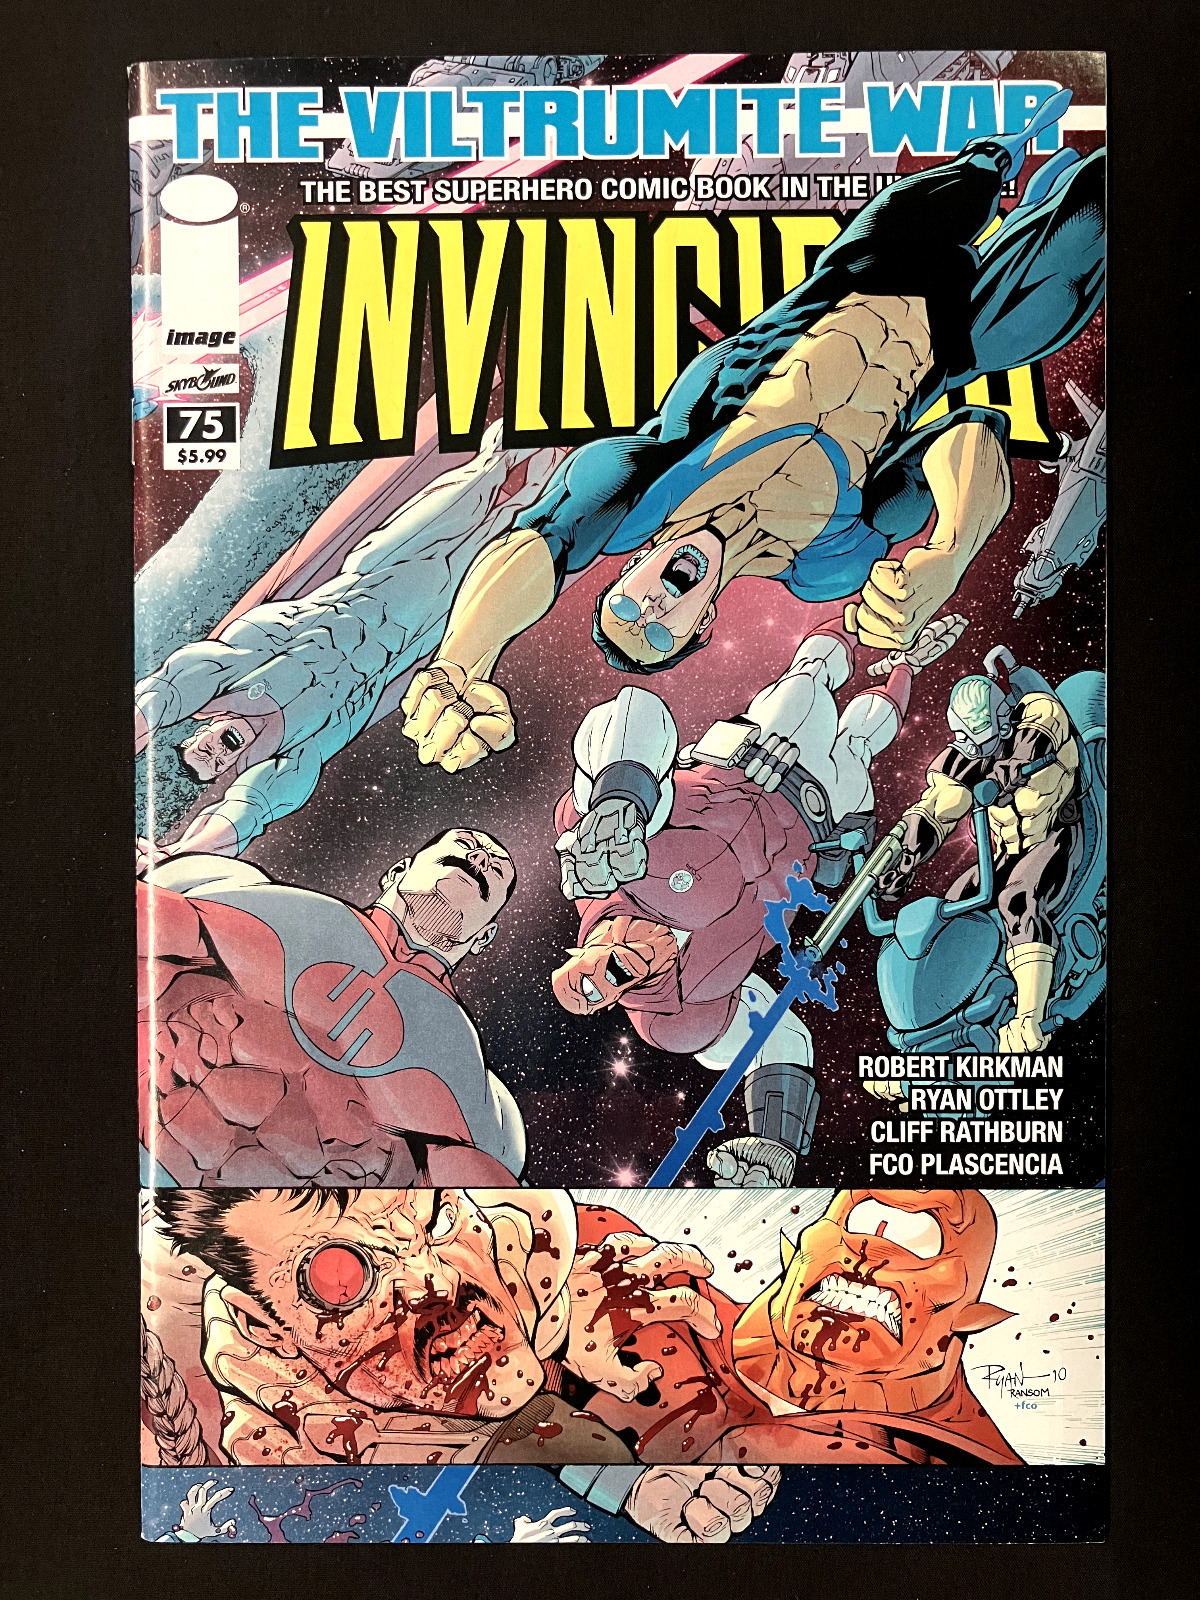 Invincible #75 Image Comics Nov 2010